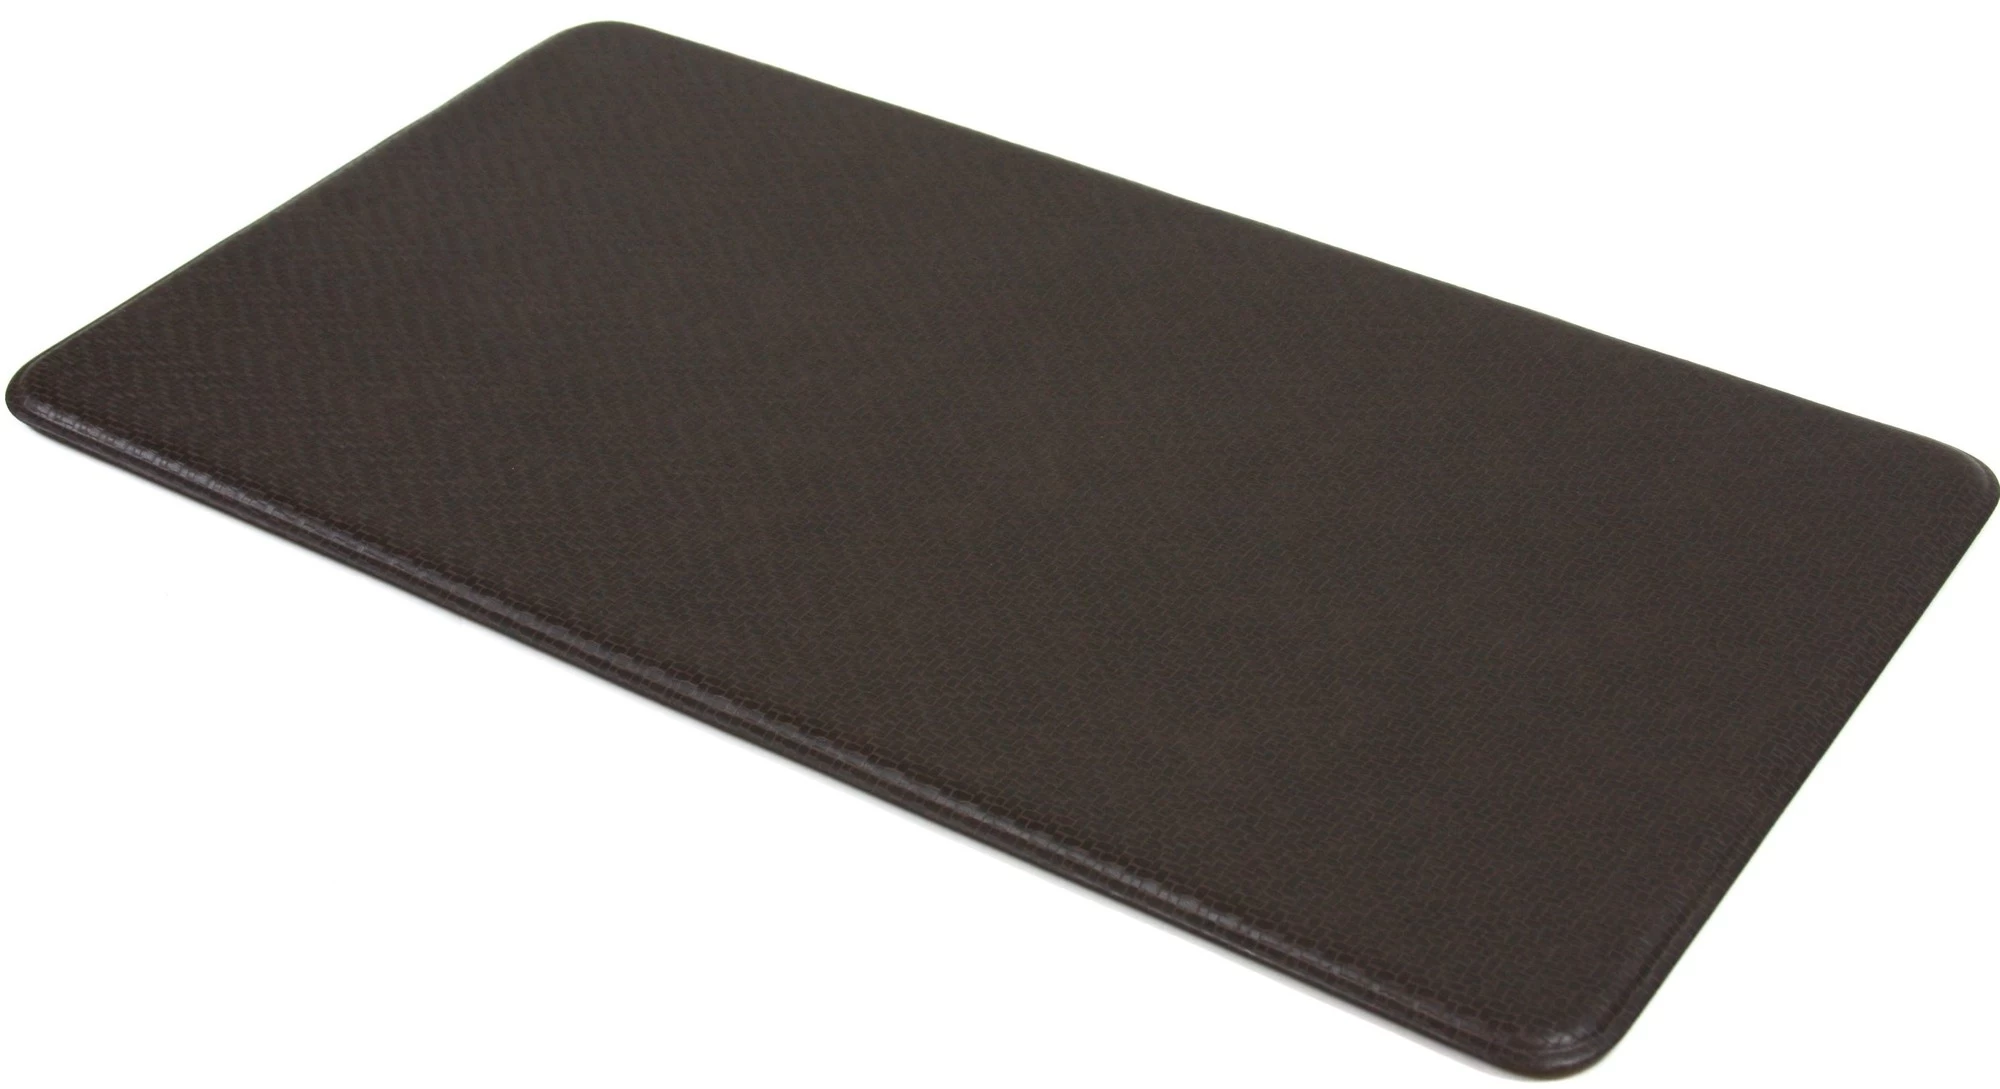 Polyurethane anti slip mat, kitchen floor mats, foam mat, non slip bath mat, foam floor mats